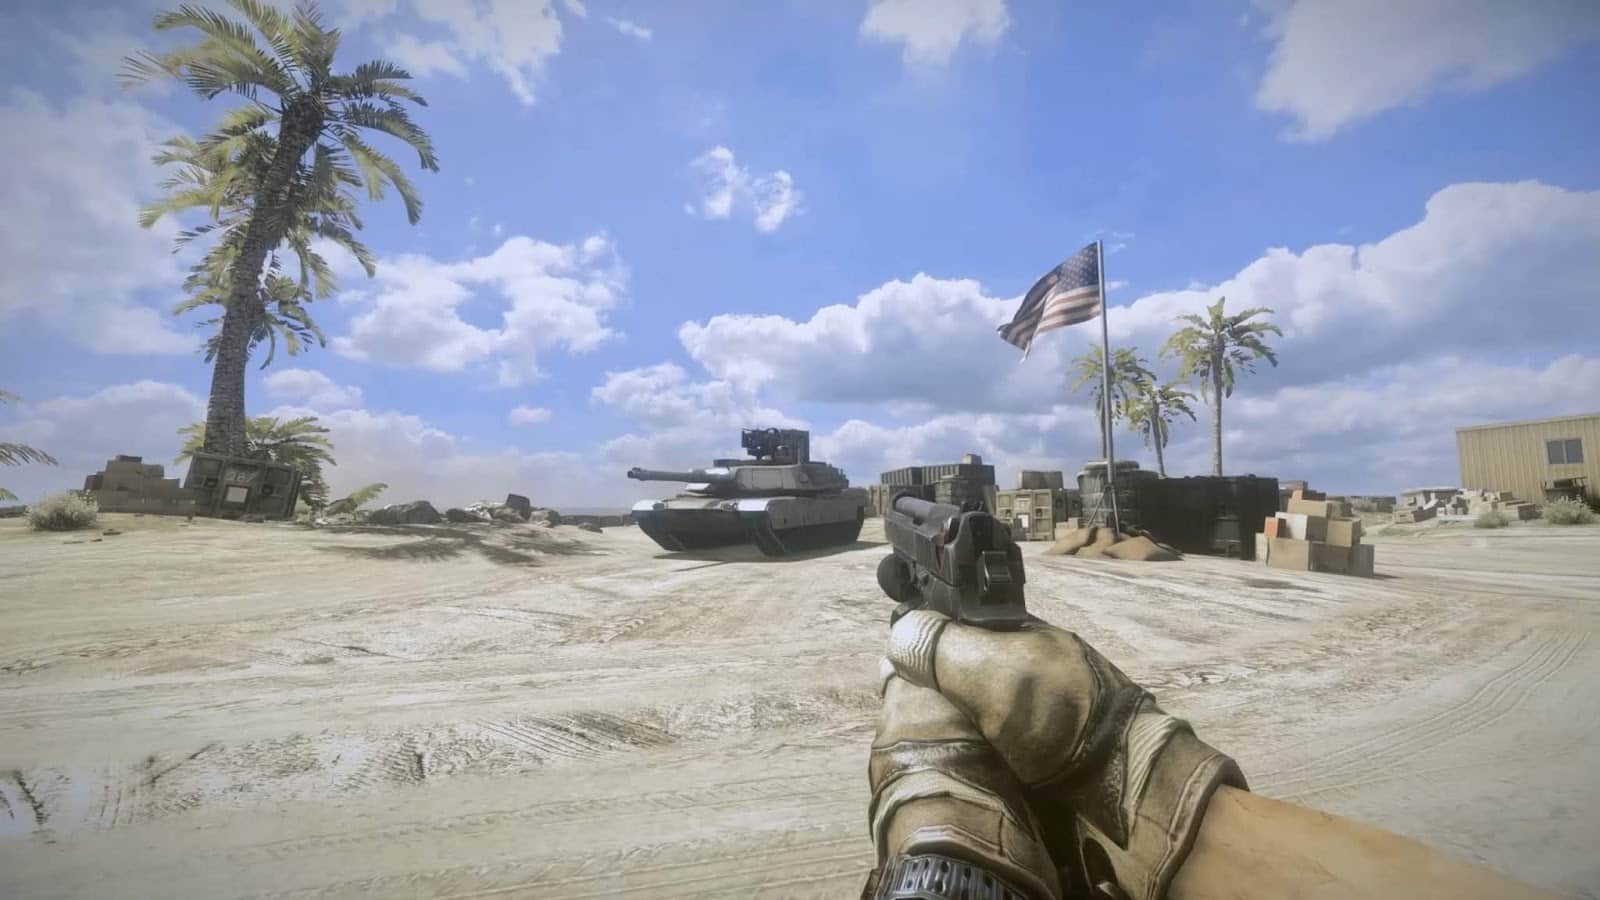 Battlefield 3 requisitos mínimos, recomendados e muito mais